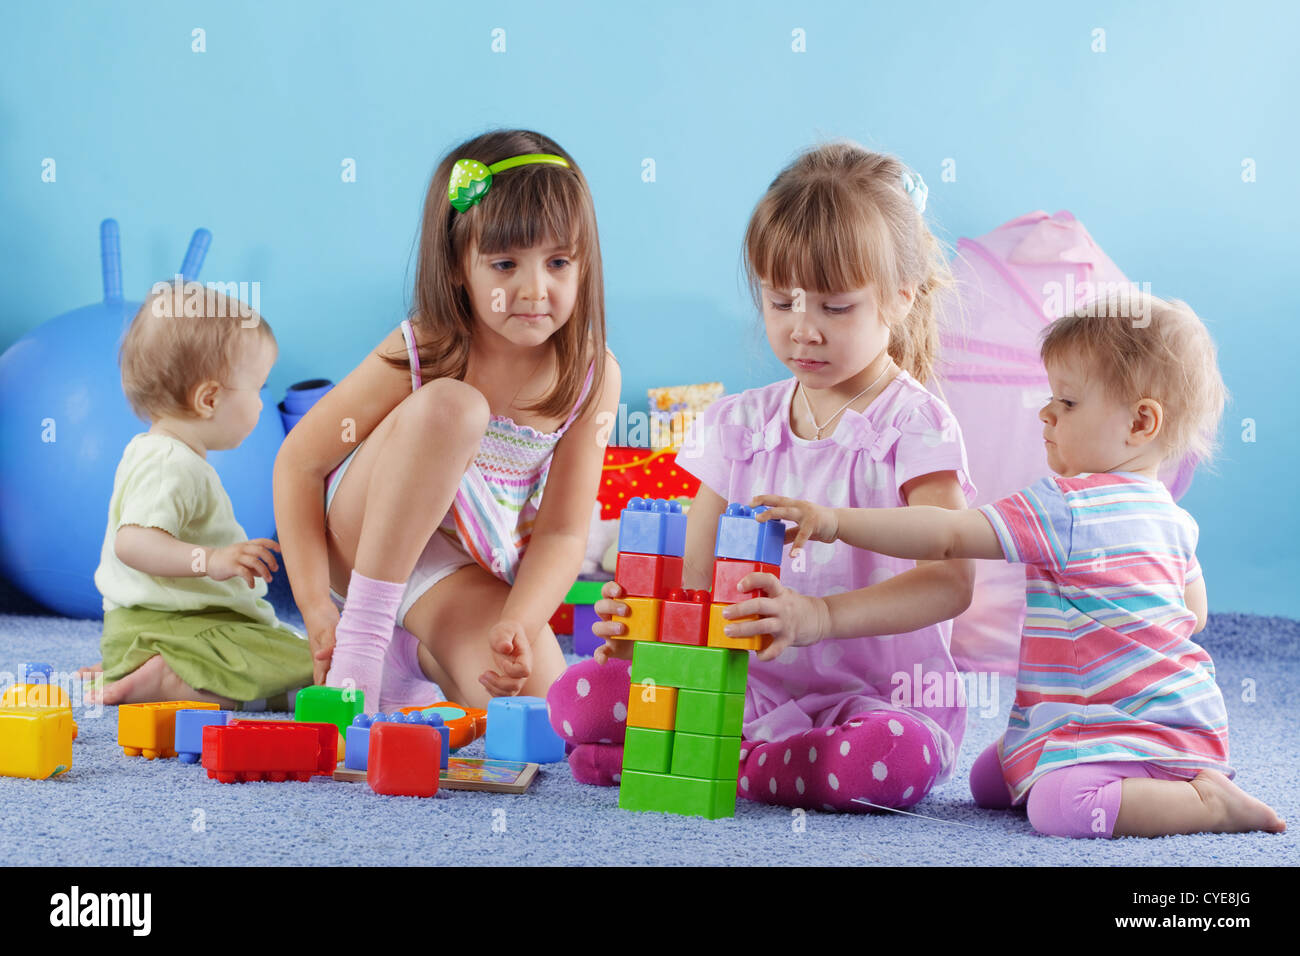 Imagining ru. Психология игрушки. Ребенок играется с конструктором. Родители играют с детьми в игрушки. Детские игры с раздеванием.